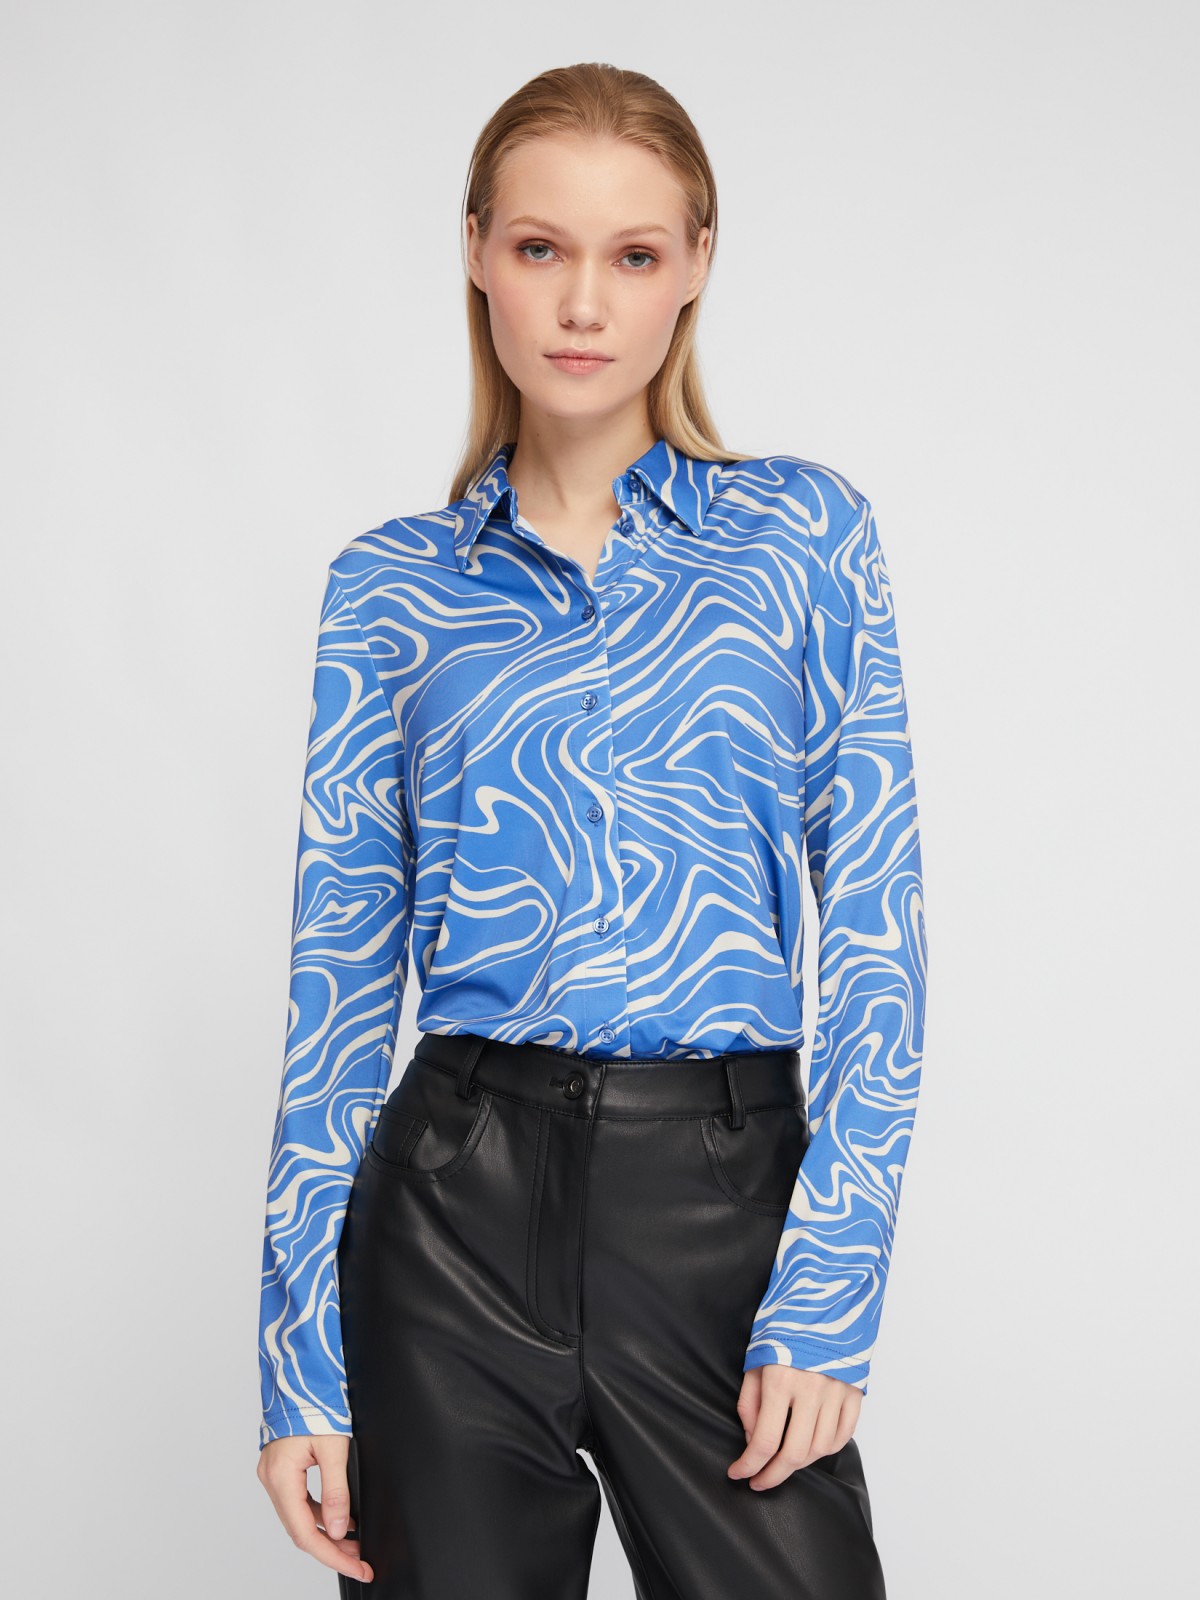 Рубашка из принтованного трикотажа с длинным рукавом zolla 024111159493, цвет голубой, размер XS - фото 1